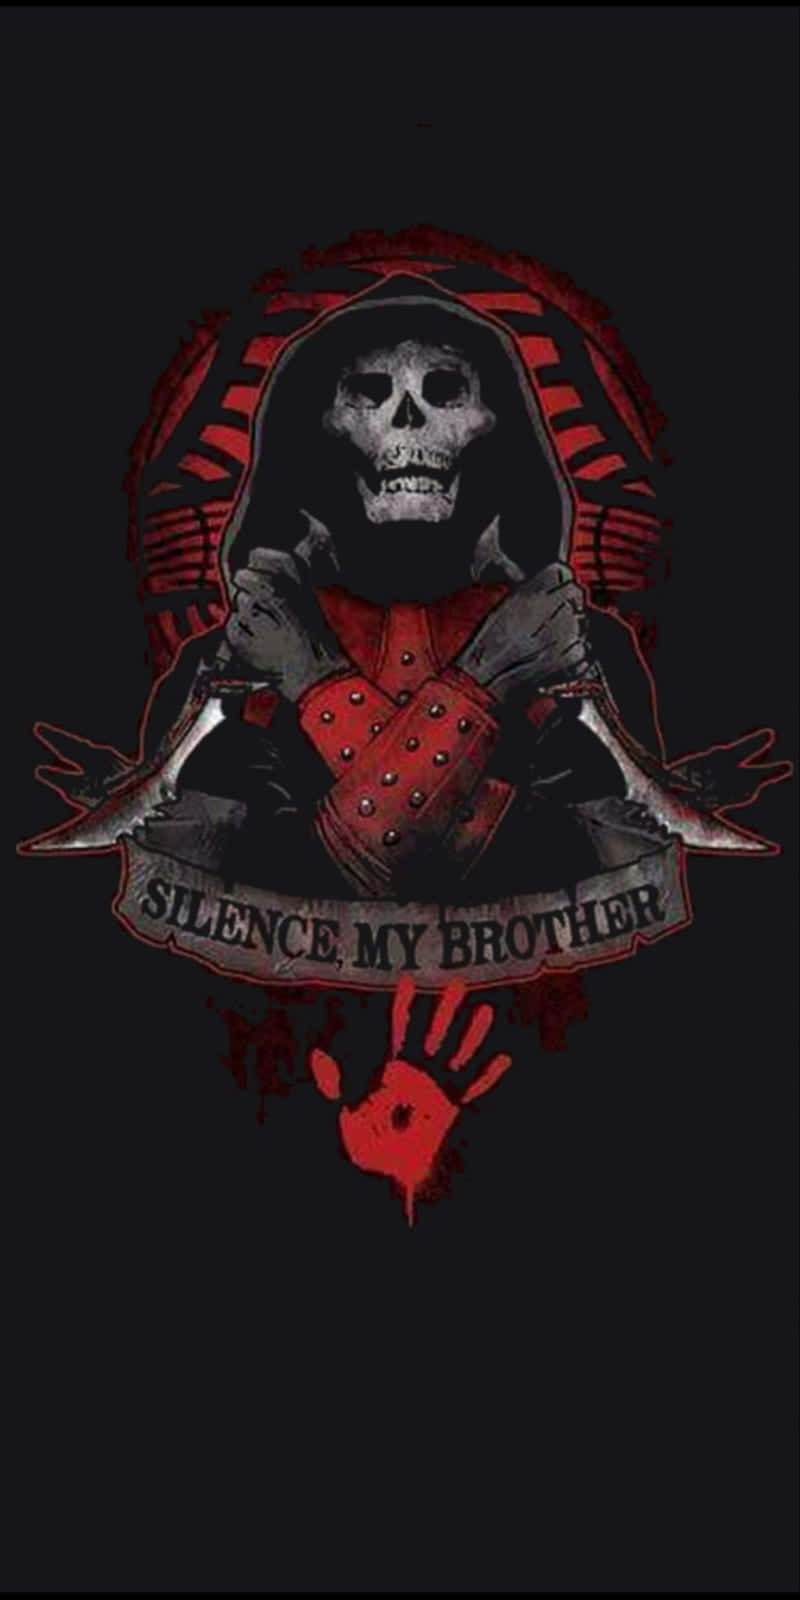 skyrim dark brotherhood symbol